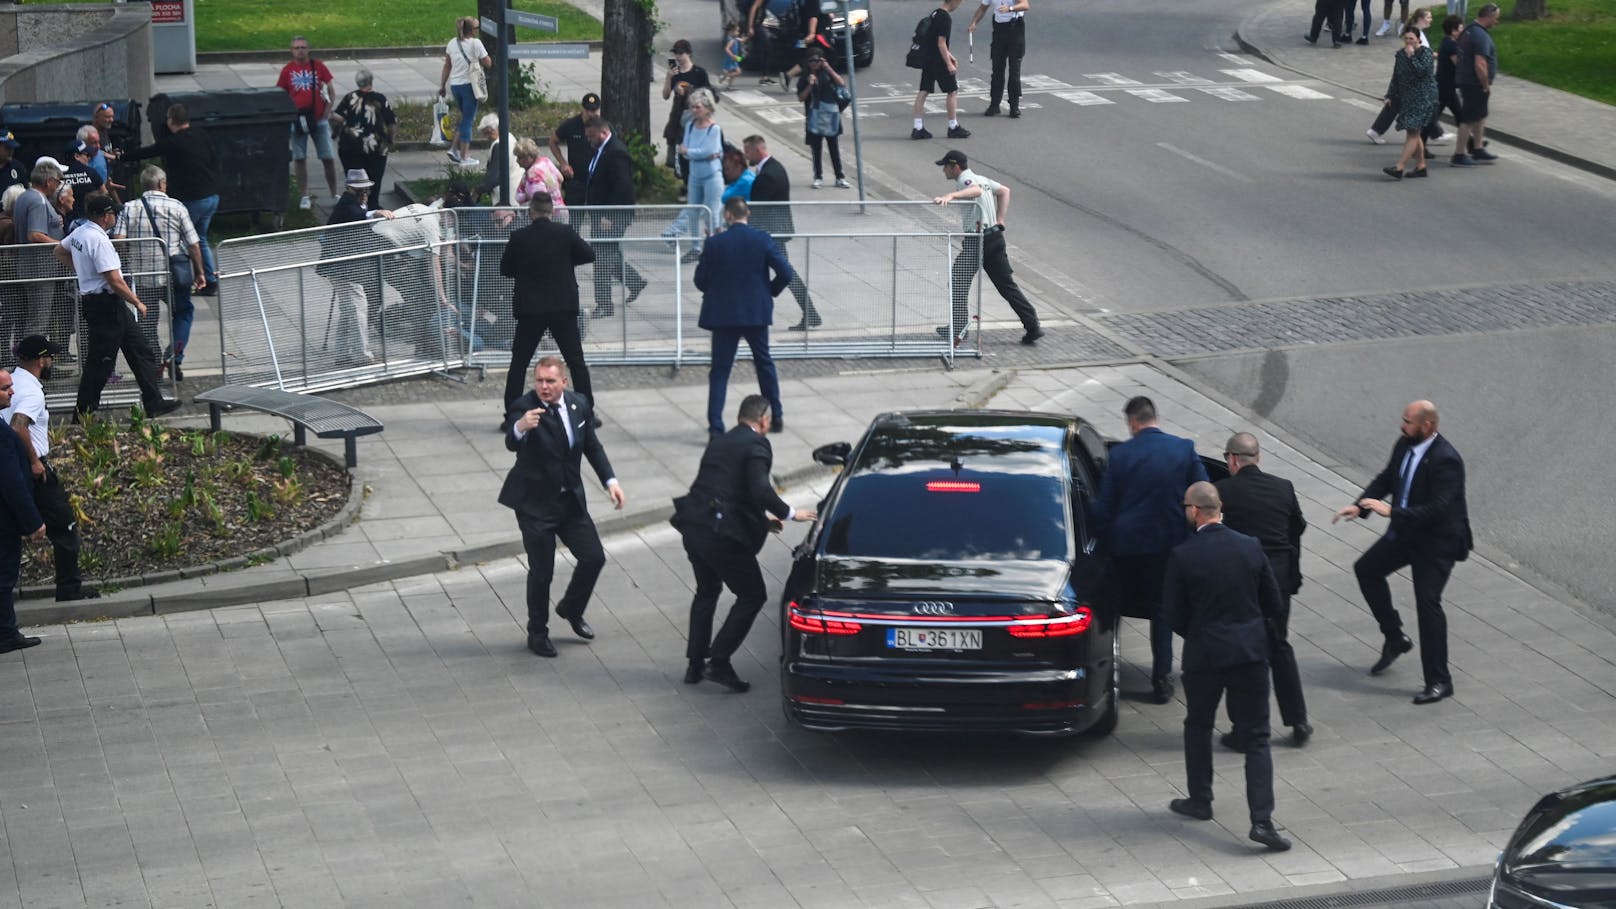 Attentat! Slowakischer Regierungschef angeschossen